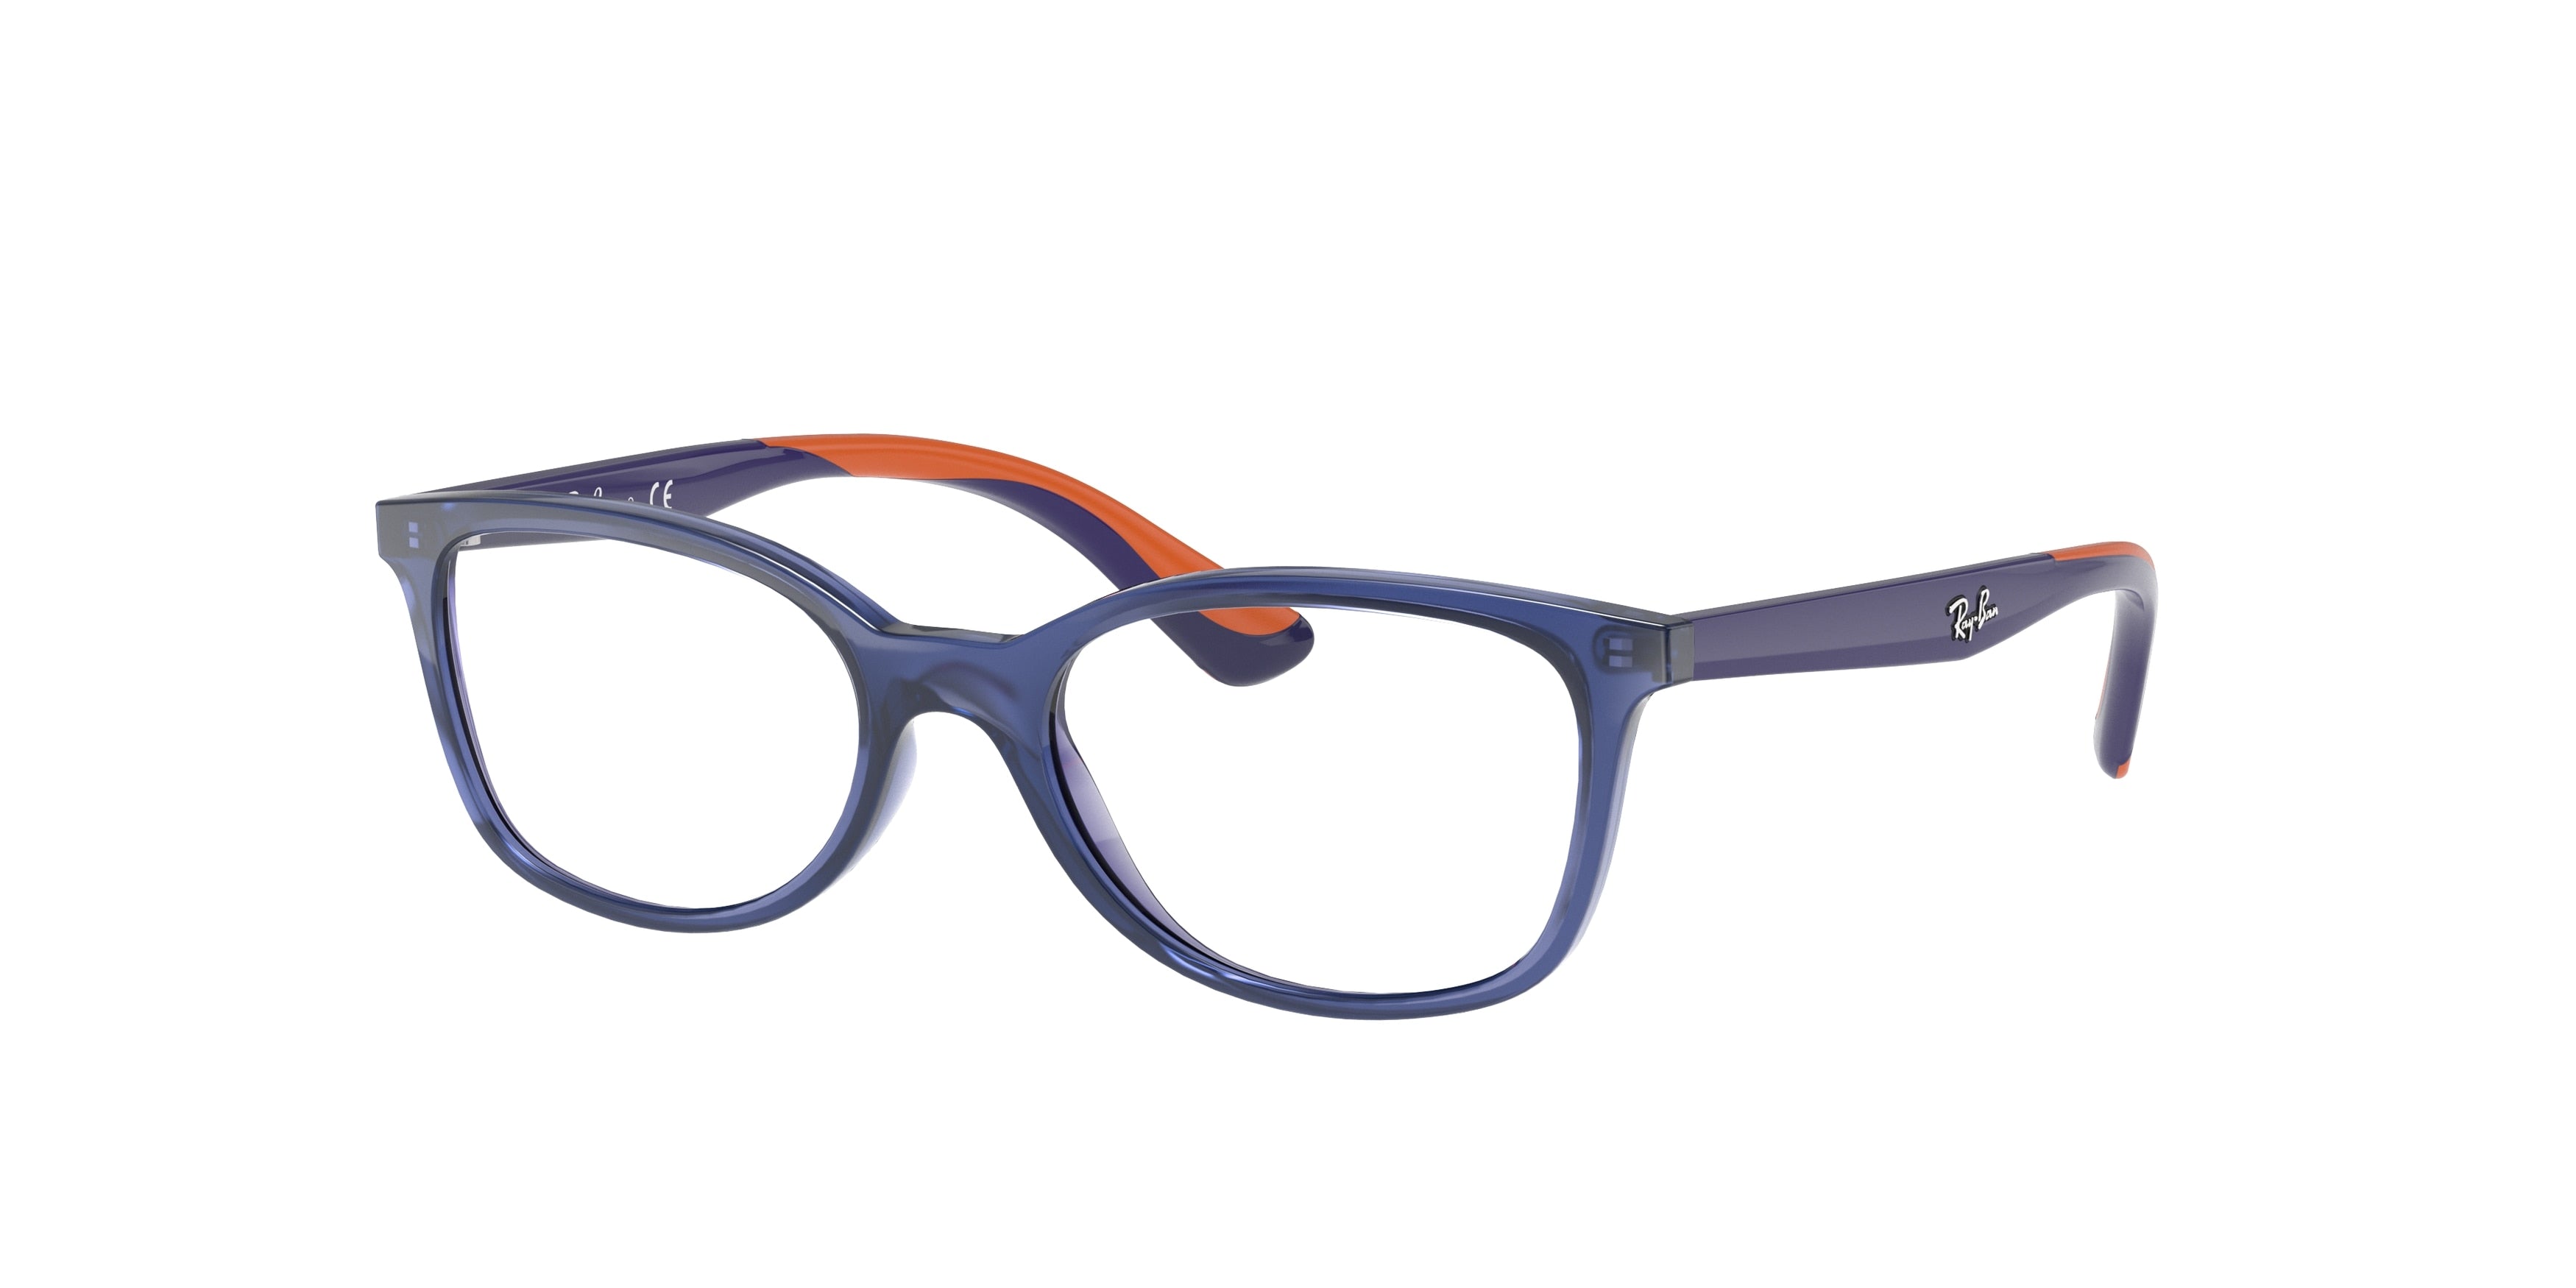 Ray-Ban Junior Vista RY1586 Square Eyeglasses  3775-Transparent Blue 49-130-16 - Color Map Blue